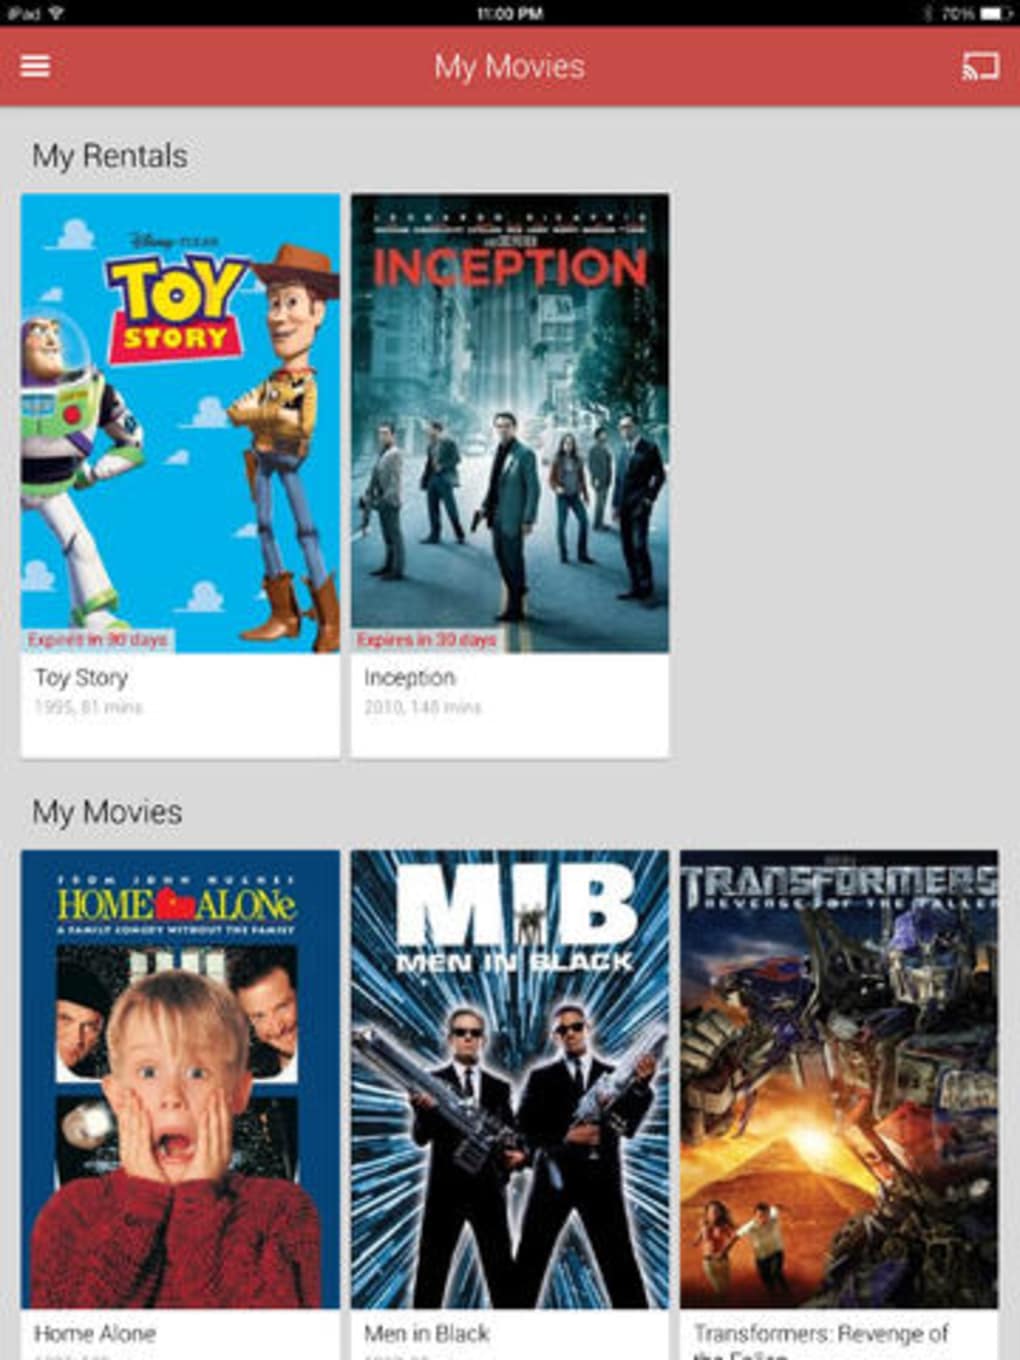 Filmes – Filmes e programas de TV no Google Play